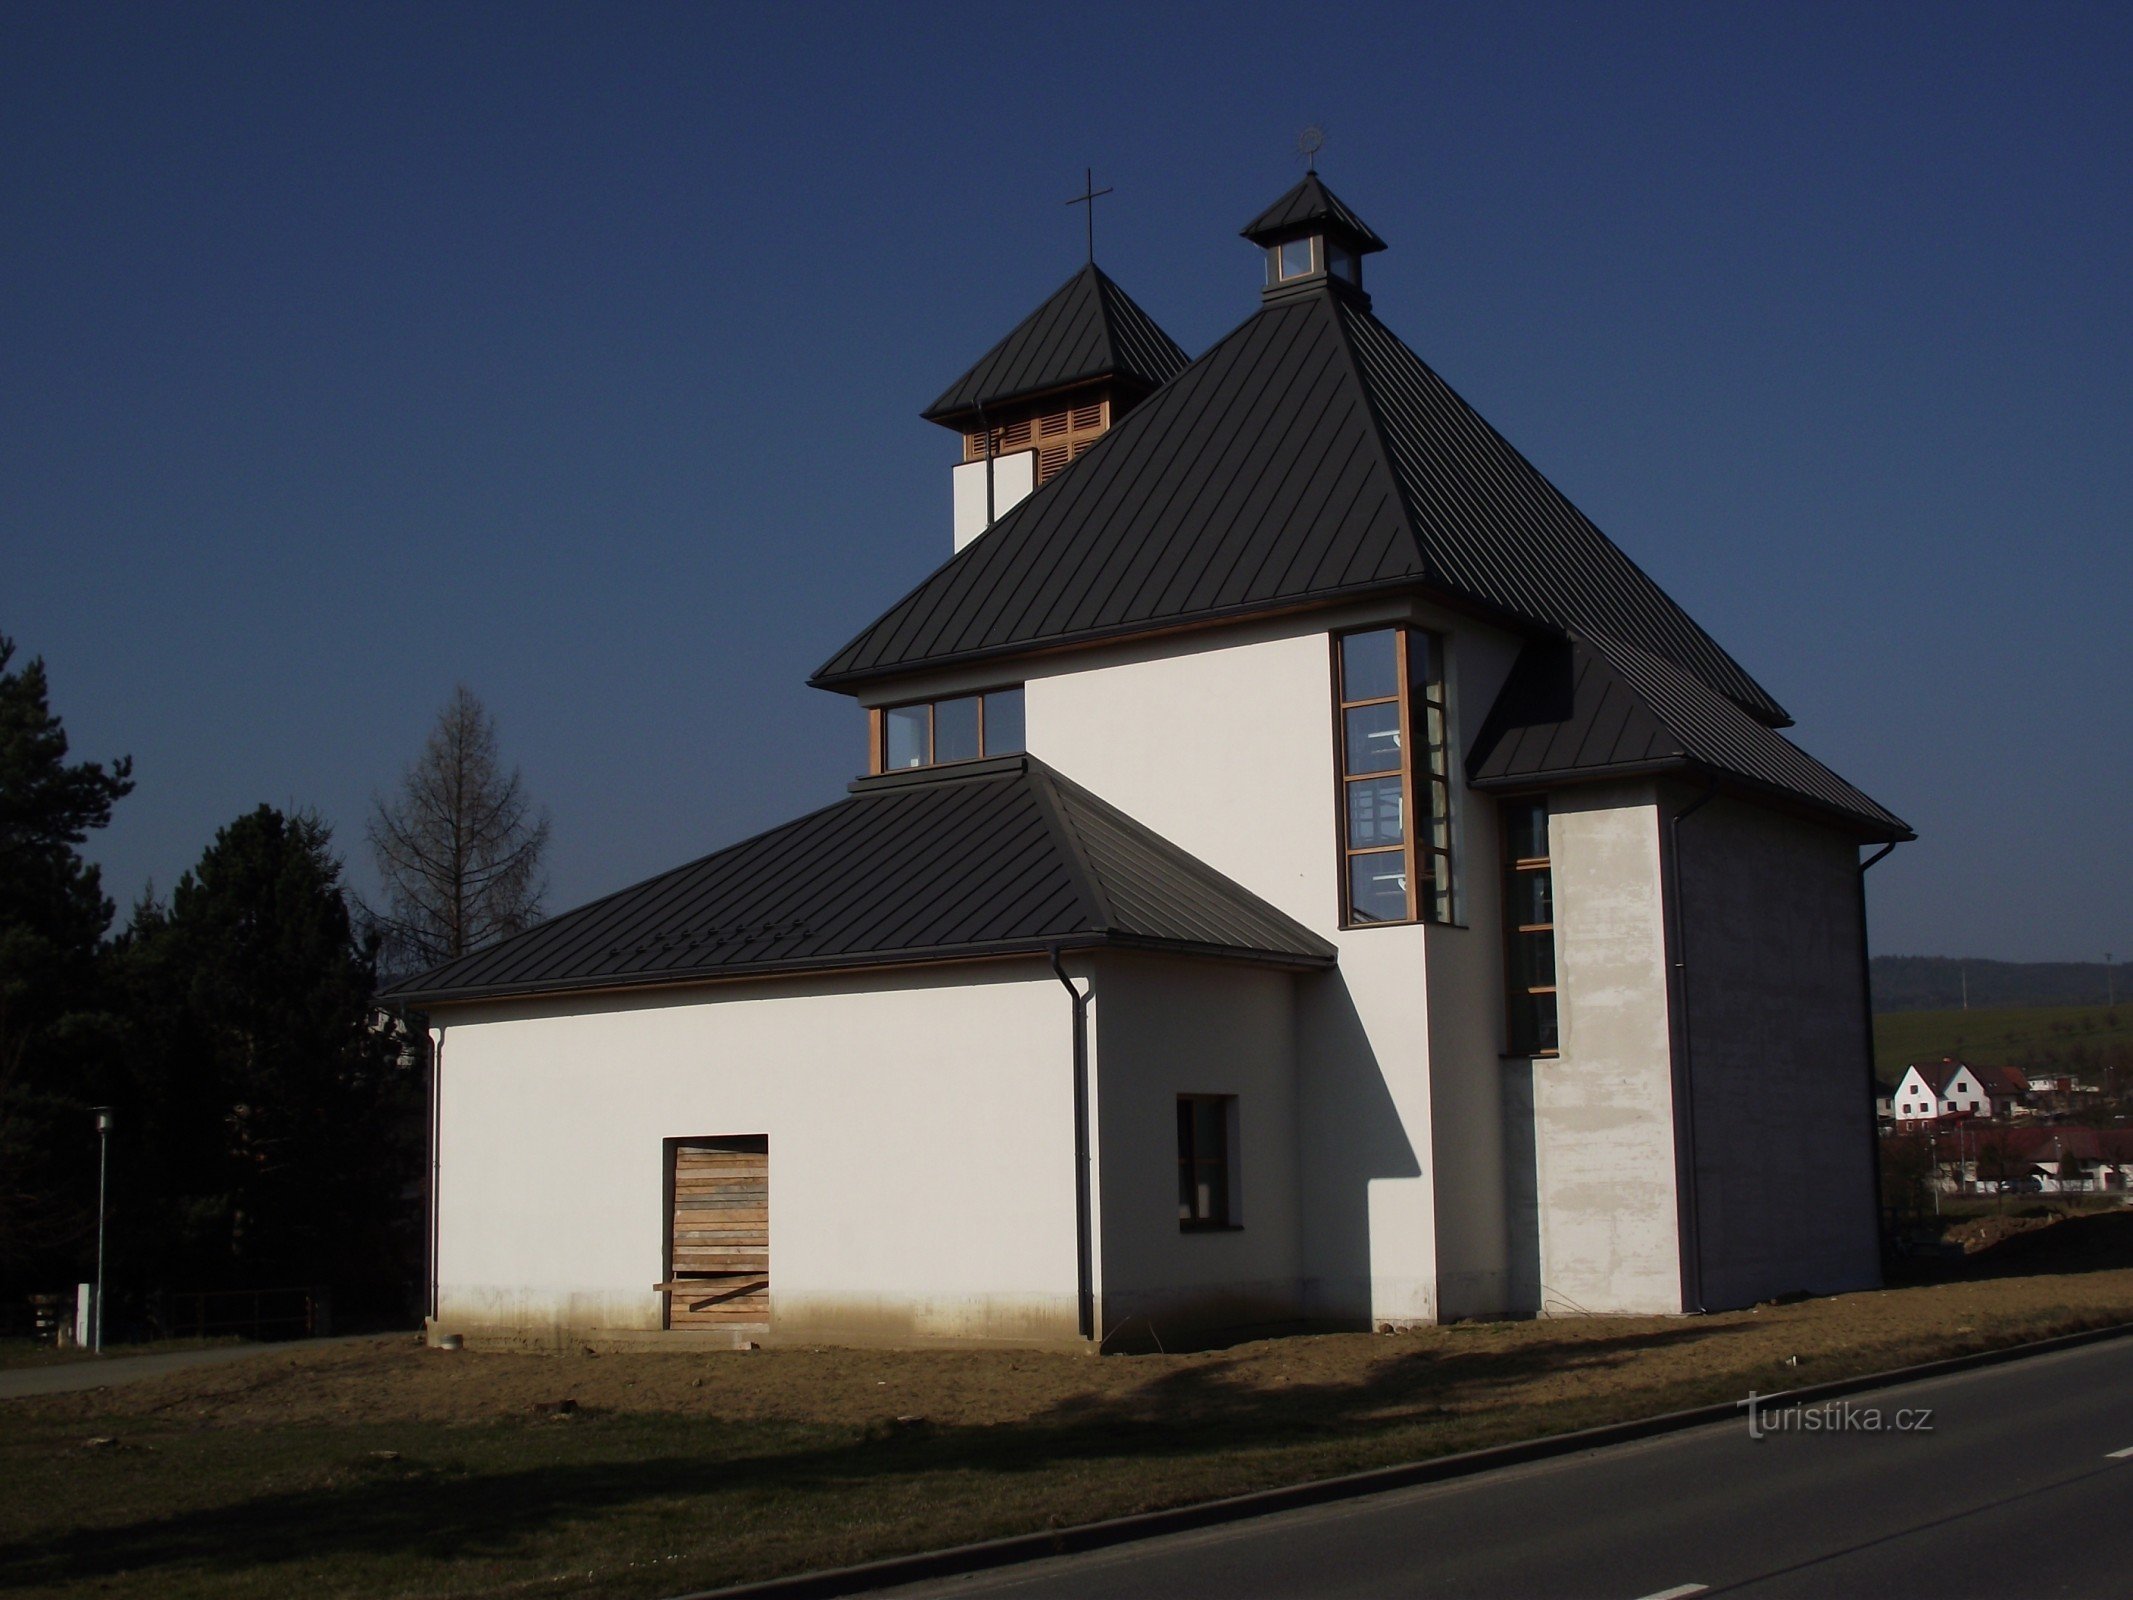 Dolní Lhota vicino a Luhačovice - la chiesa di Nostra Signora del Carmelo